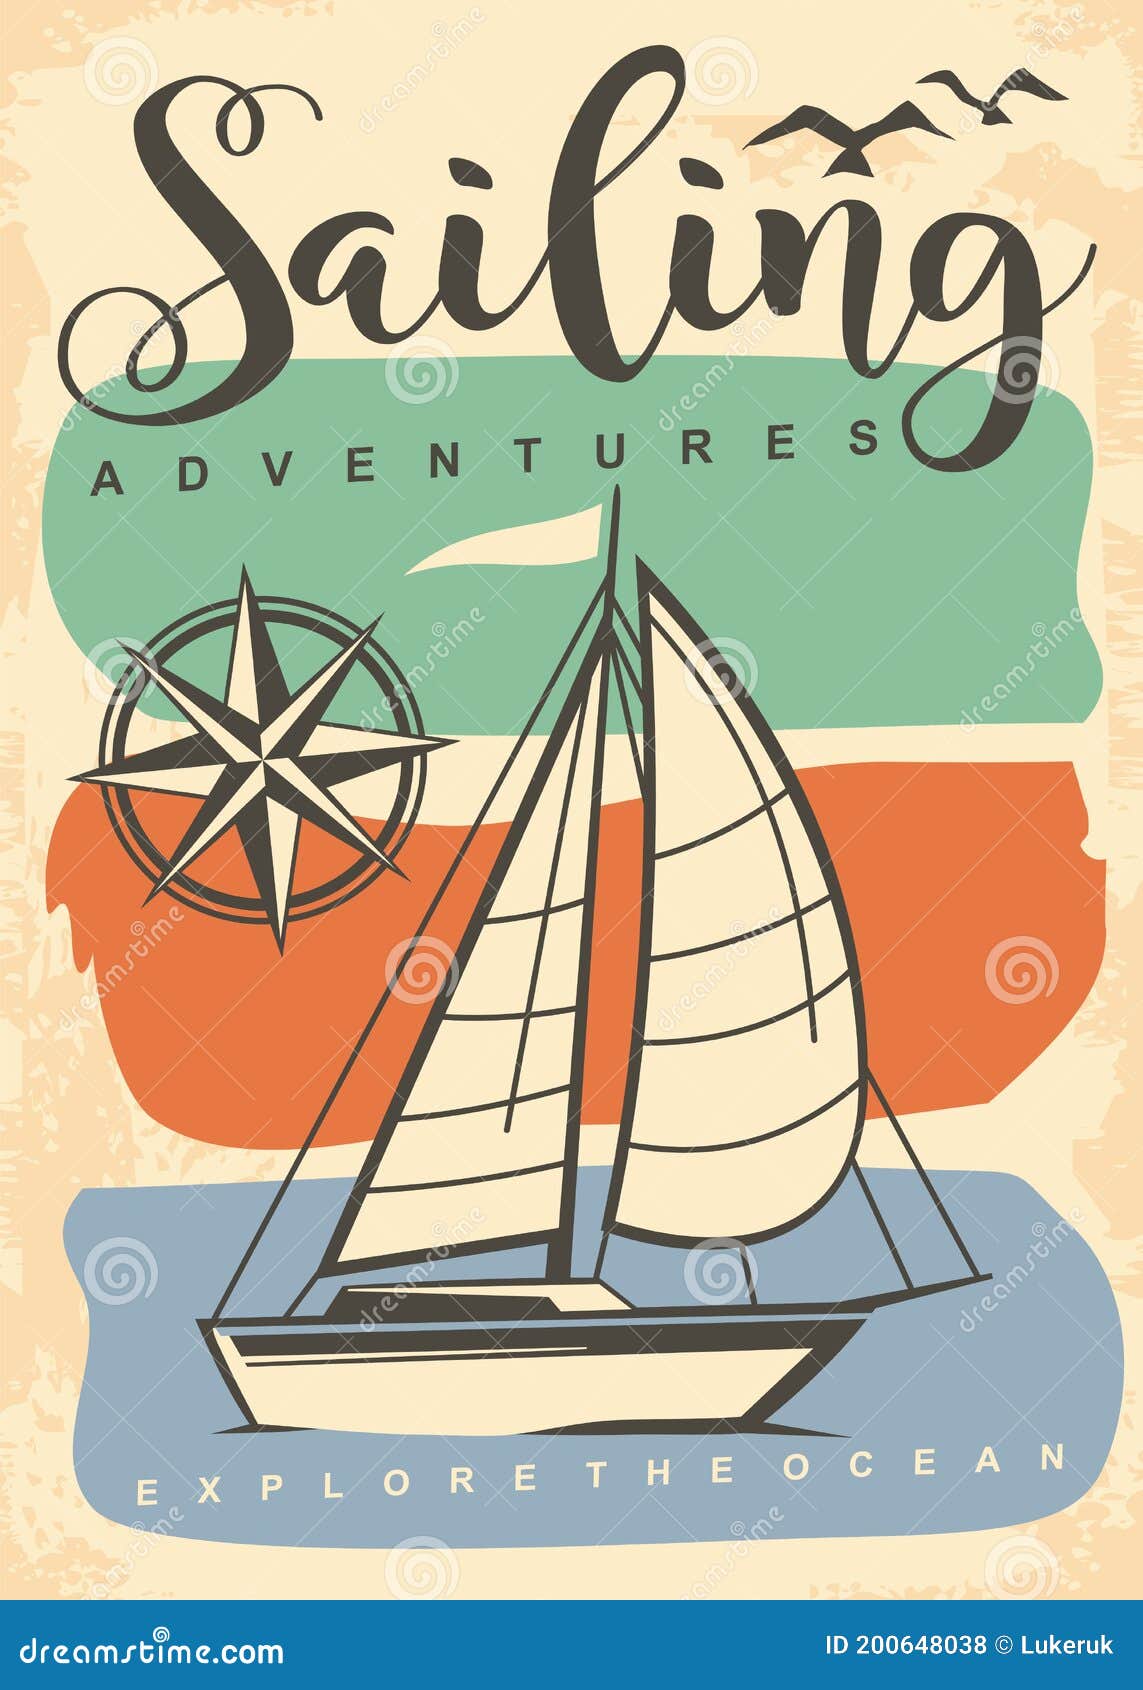 sailing adventures retro poster 